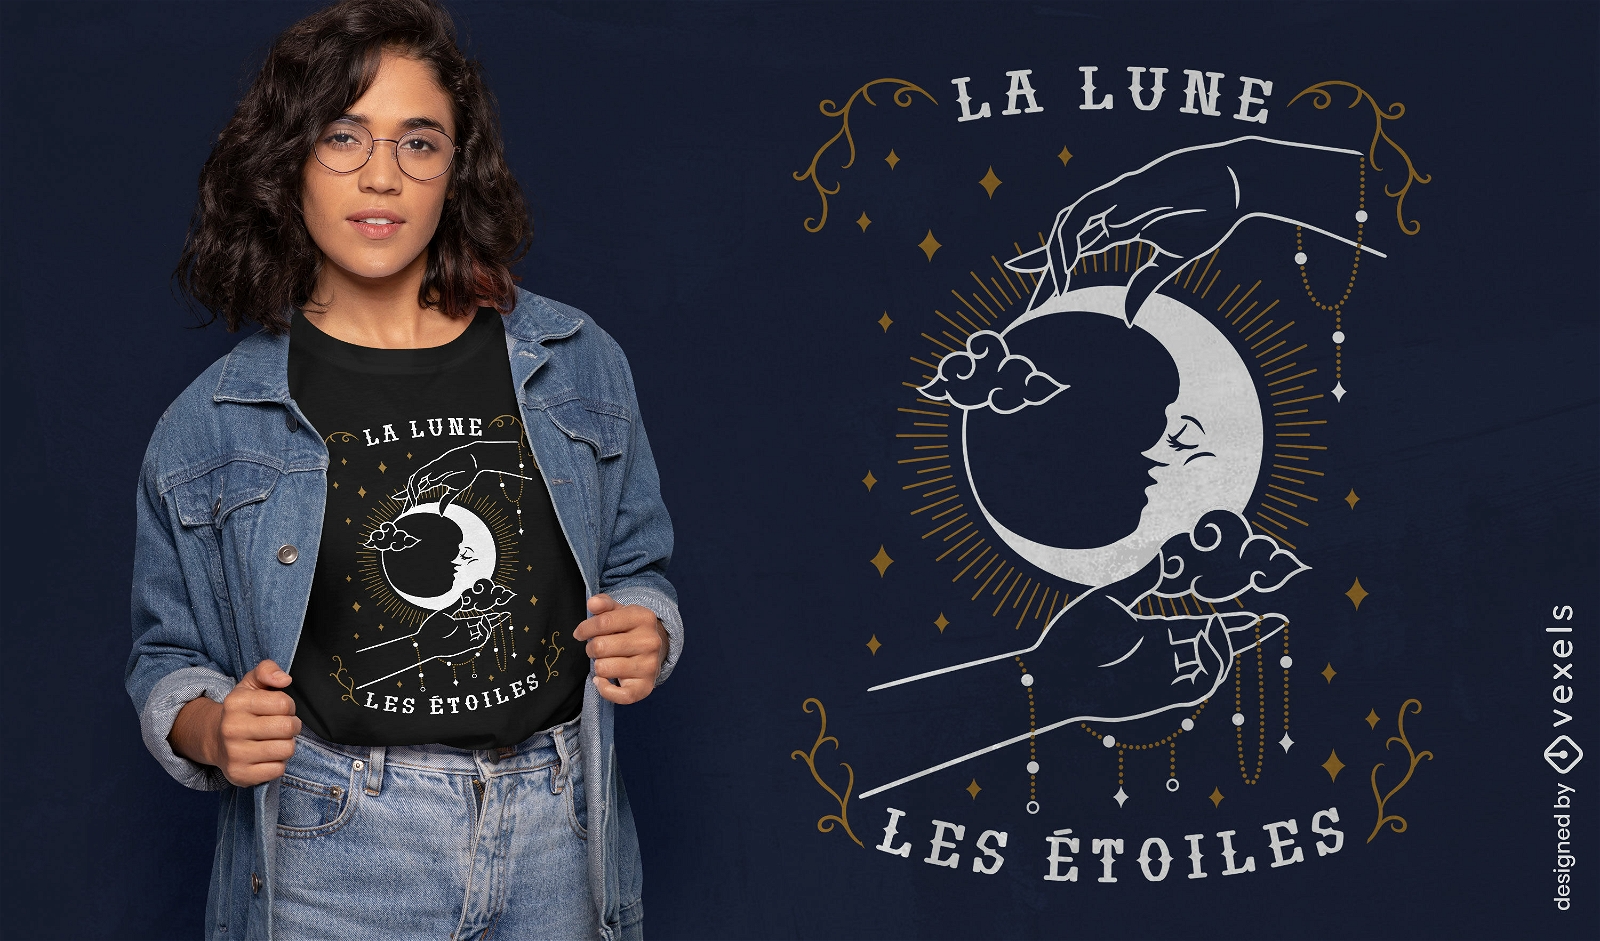 La luna las estrellas Diseño de camiseta esotérica francesa.